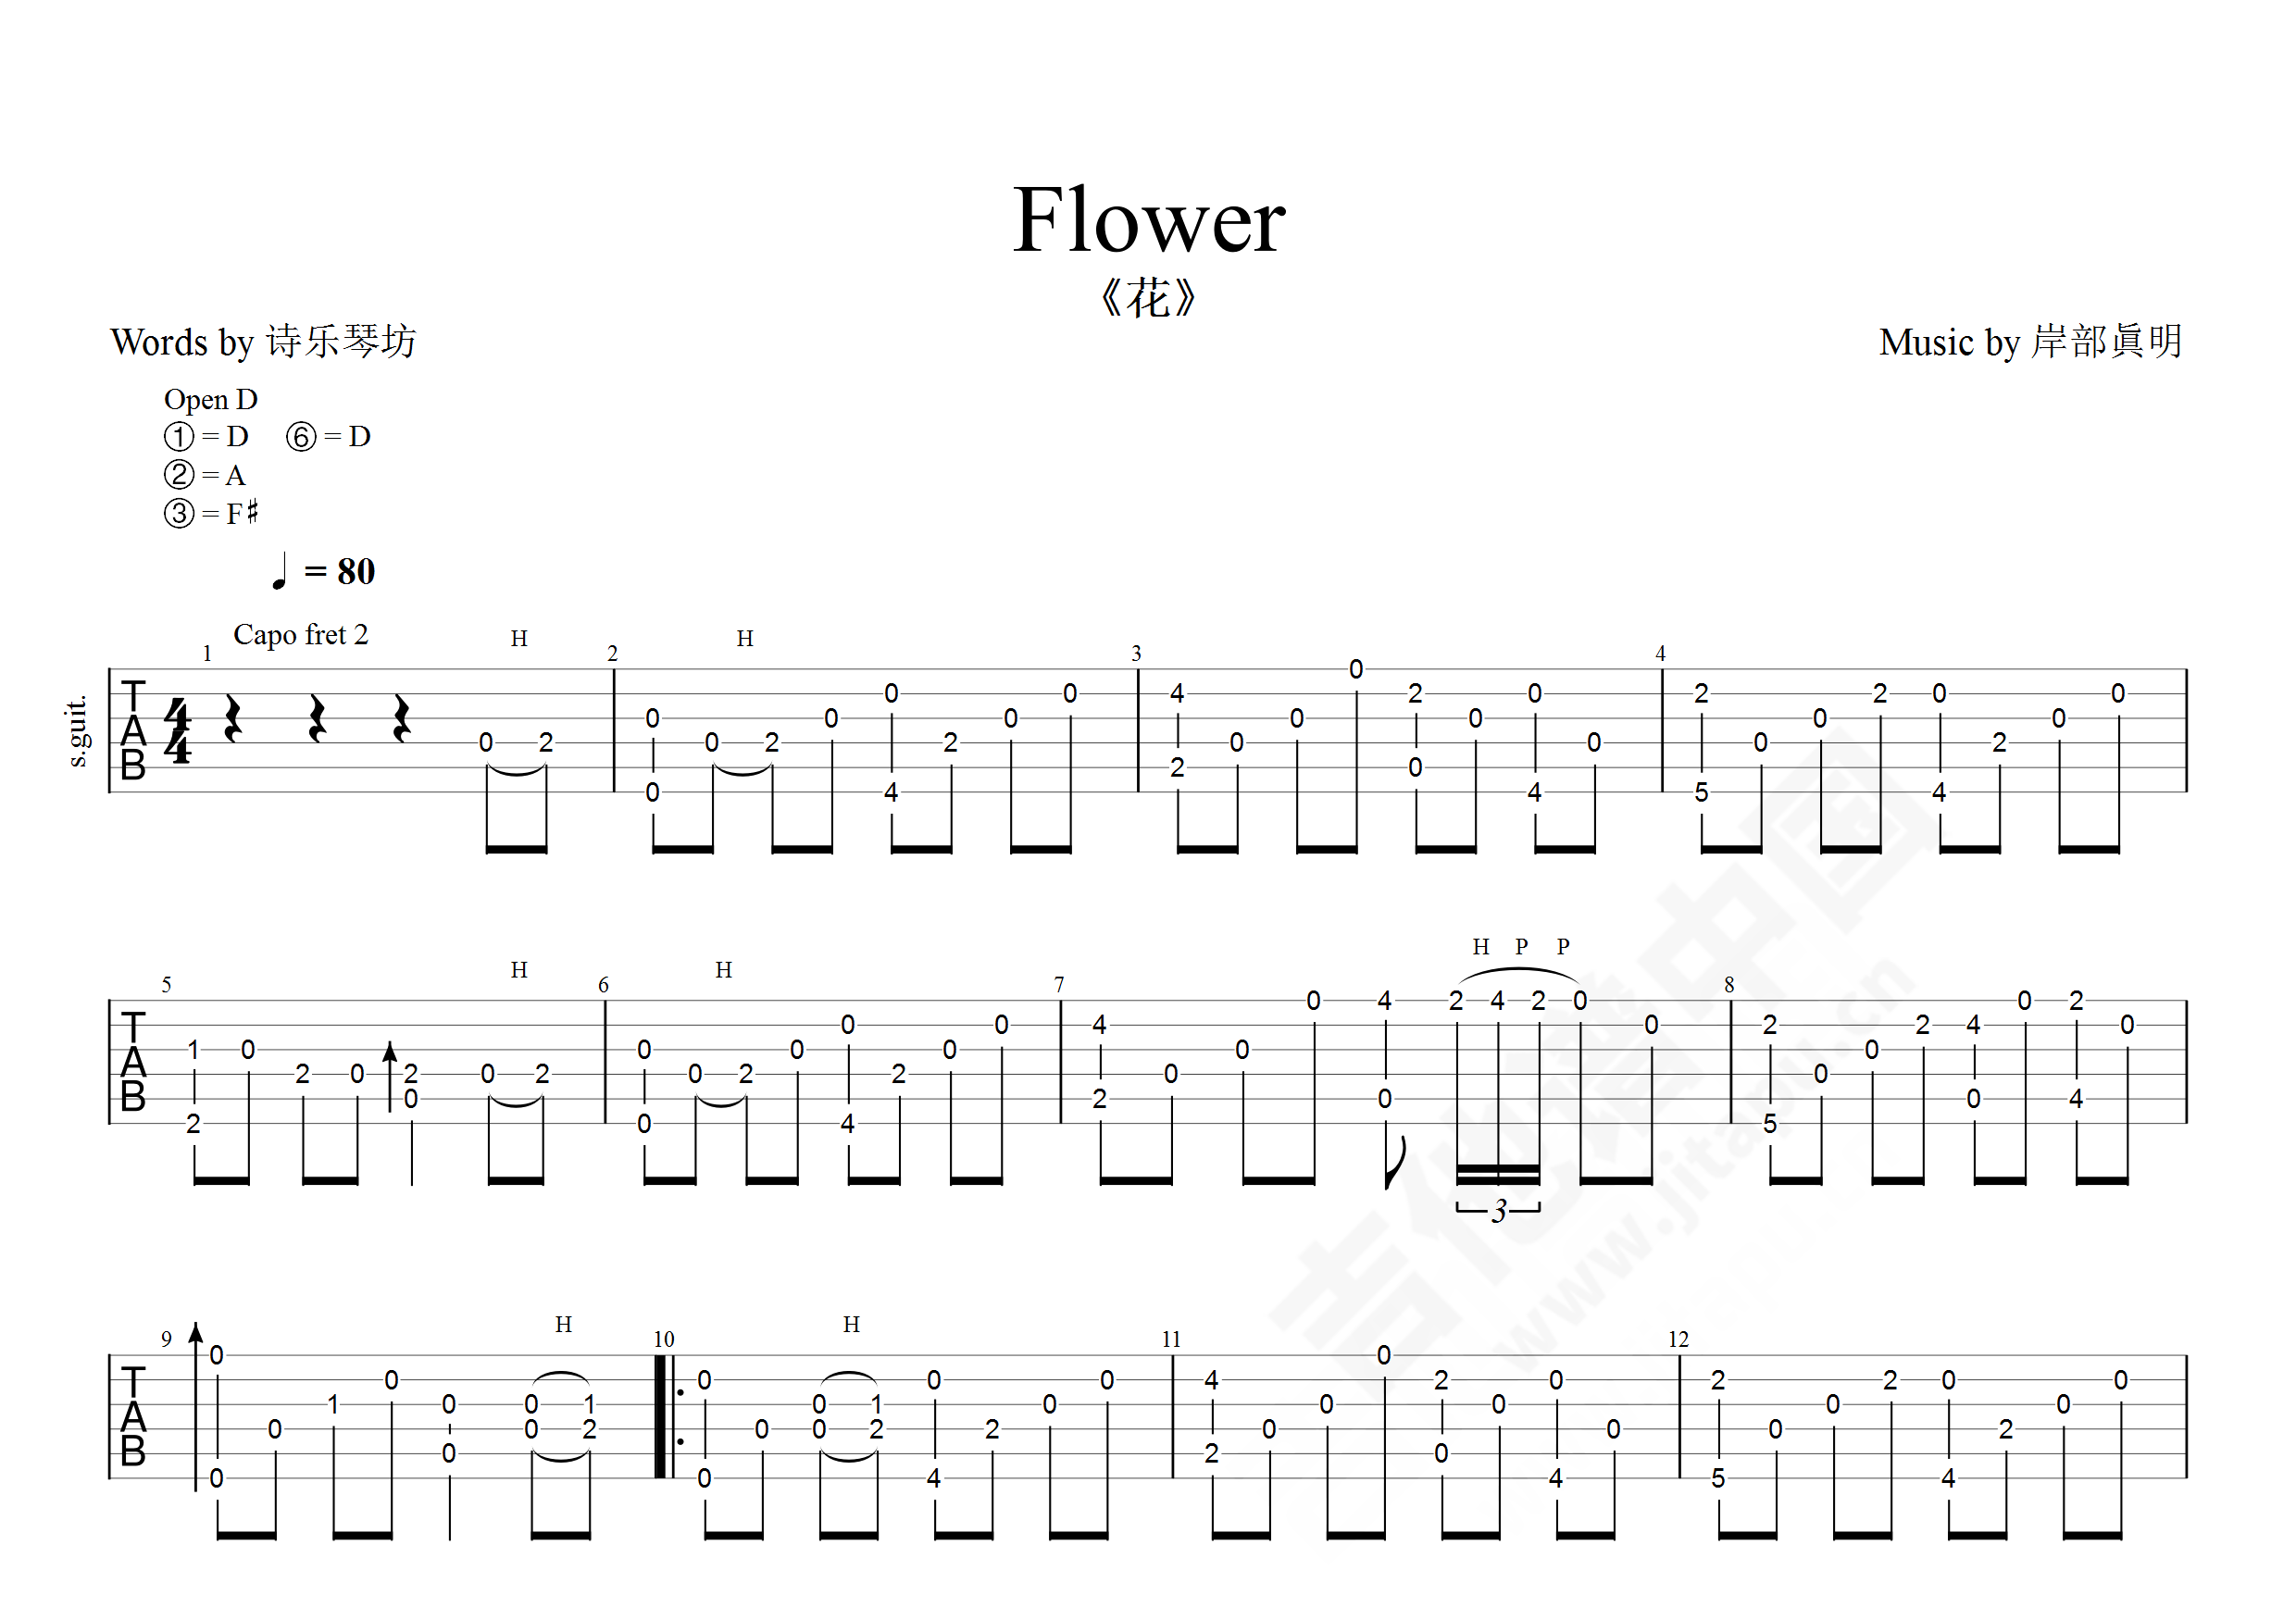 岸部真明《花 Flower 指弹 》吉他谱-Guitar Music Score-看乐谱网